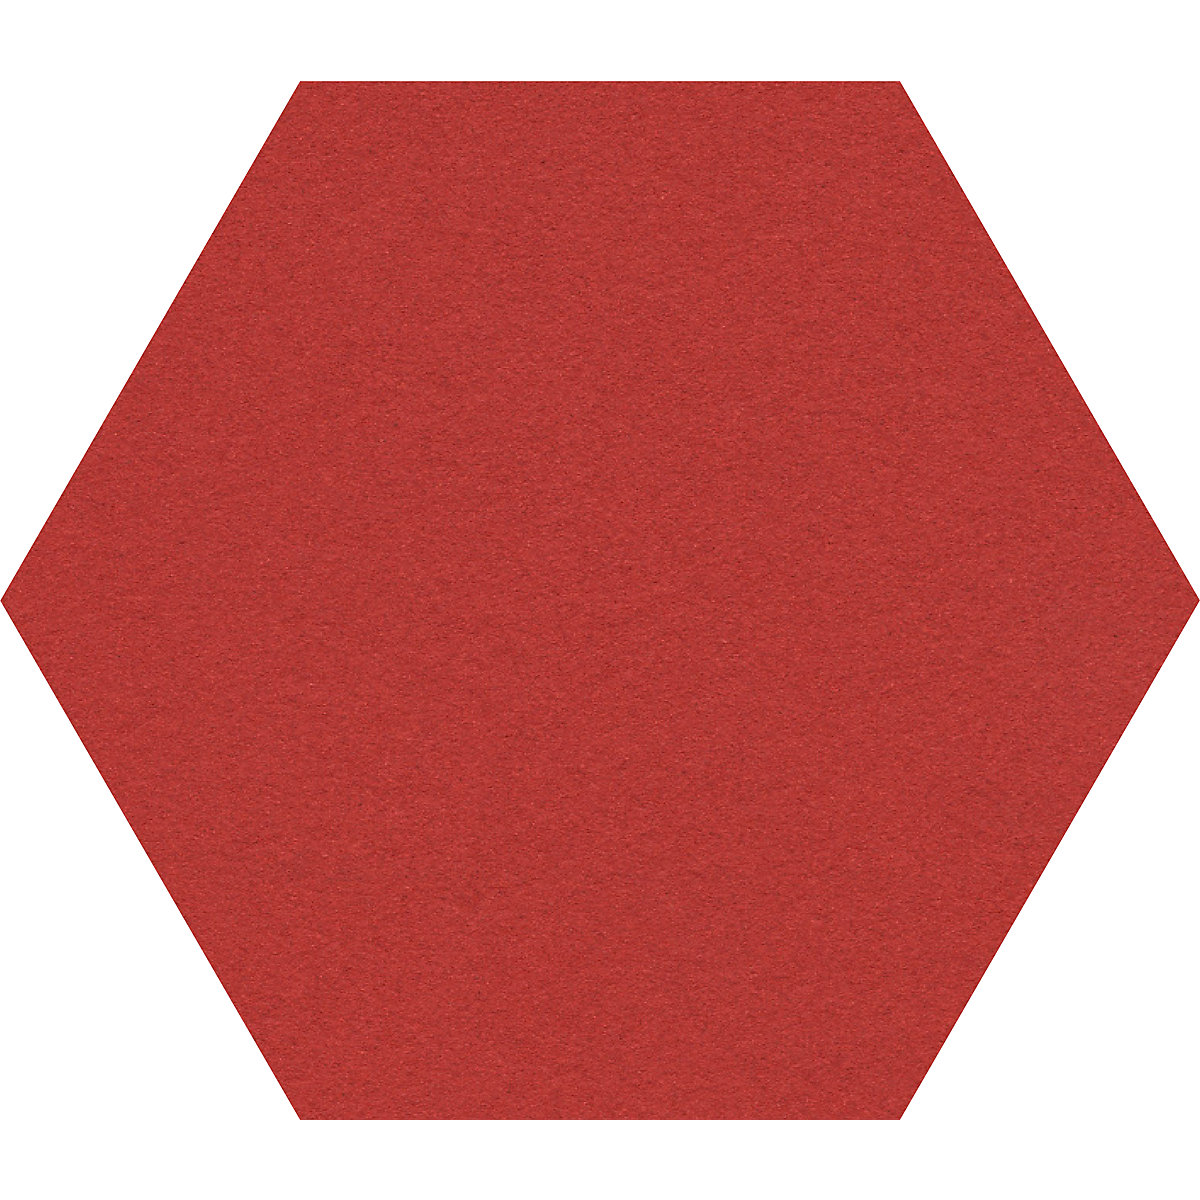 Quadro de pinos com design hexagonal – Chameleon, cortiça, LxA 600 x 600 mm, vermelho-36